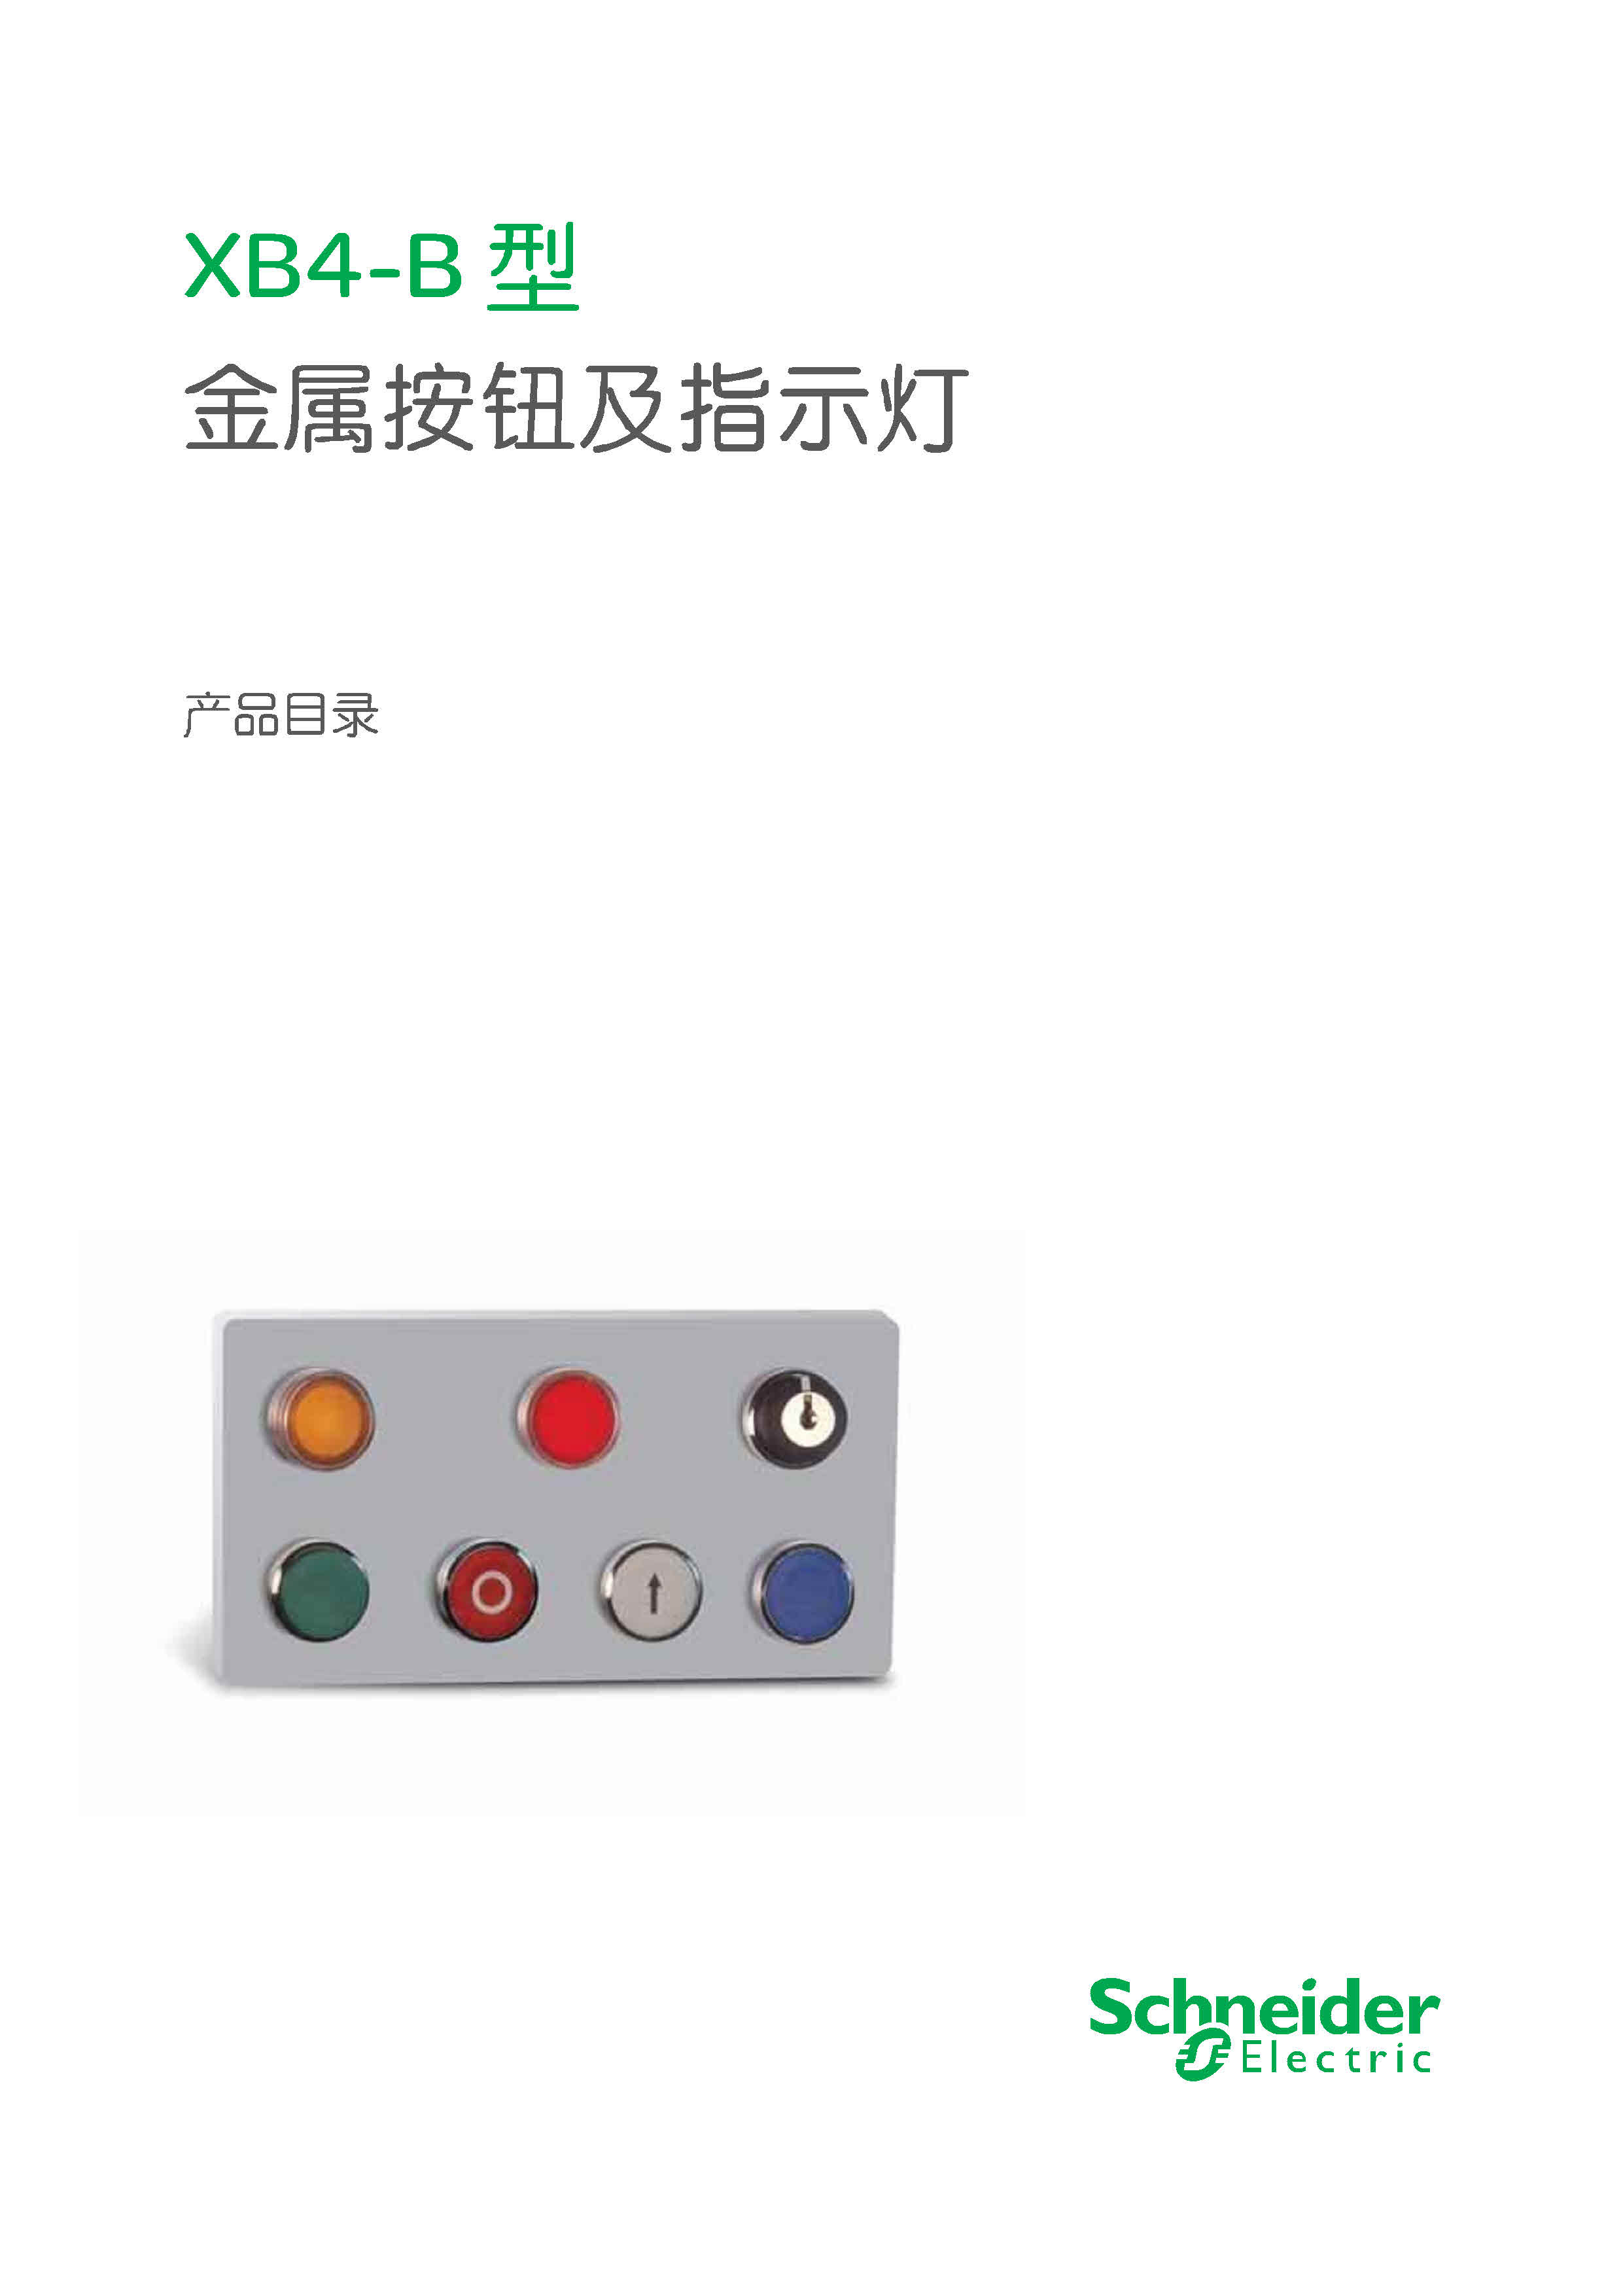 施耐德XB4-B系列进口按钮及指示灯产品目录